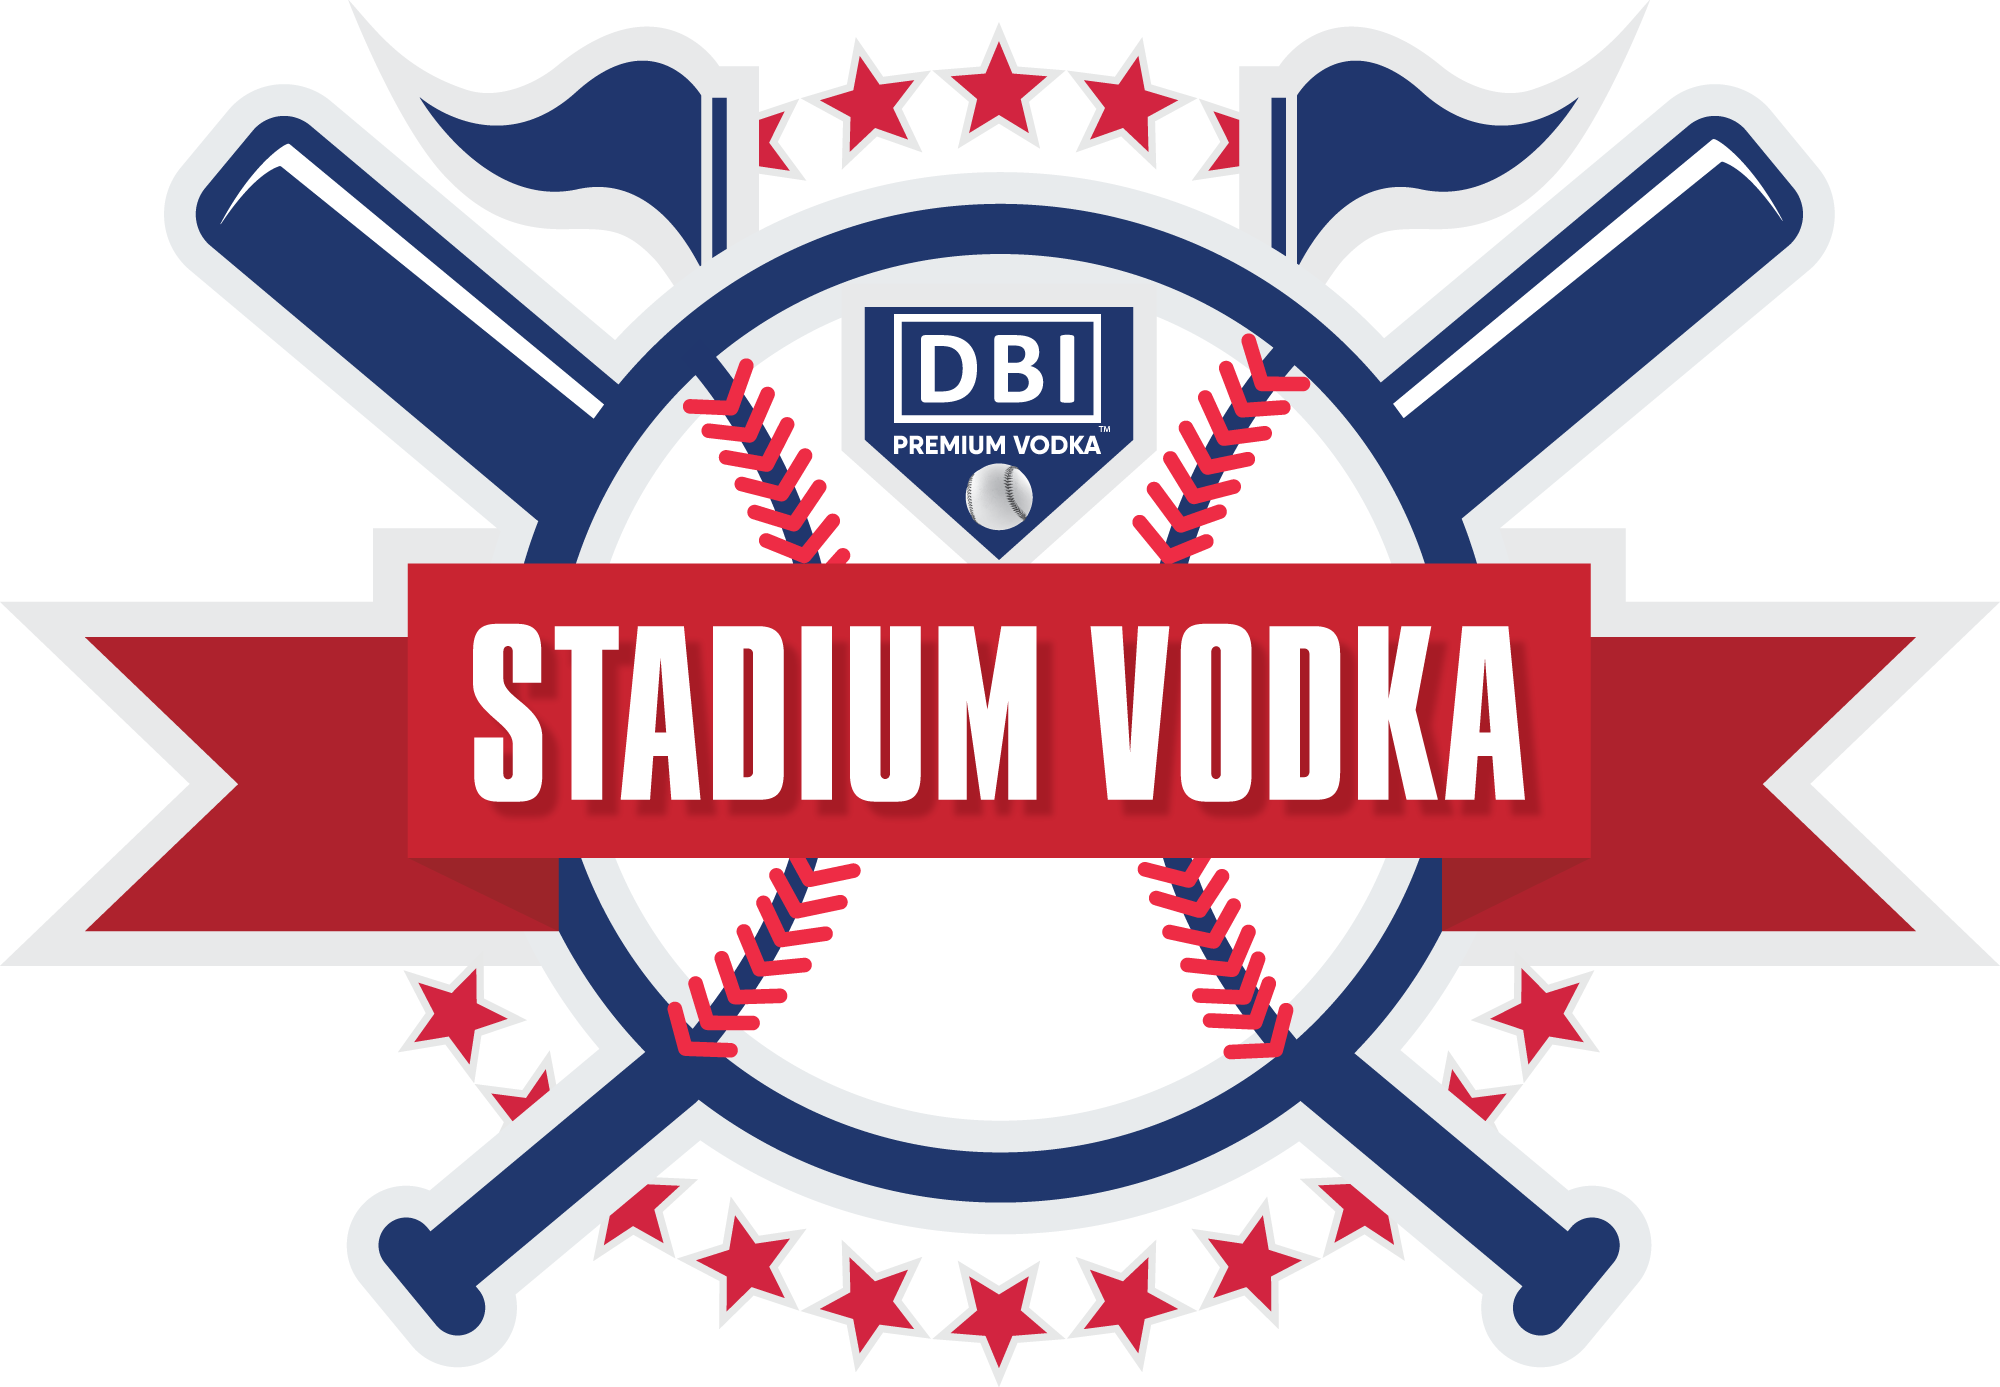 DBI Stadium Vodka